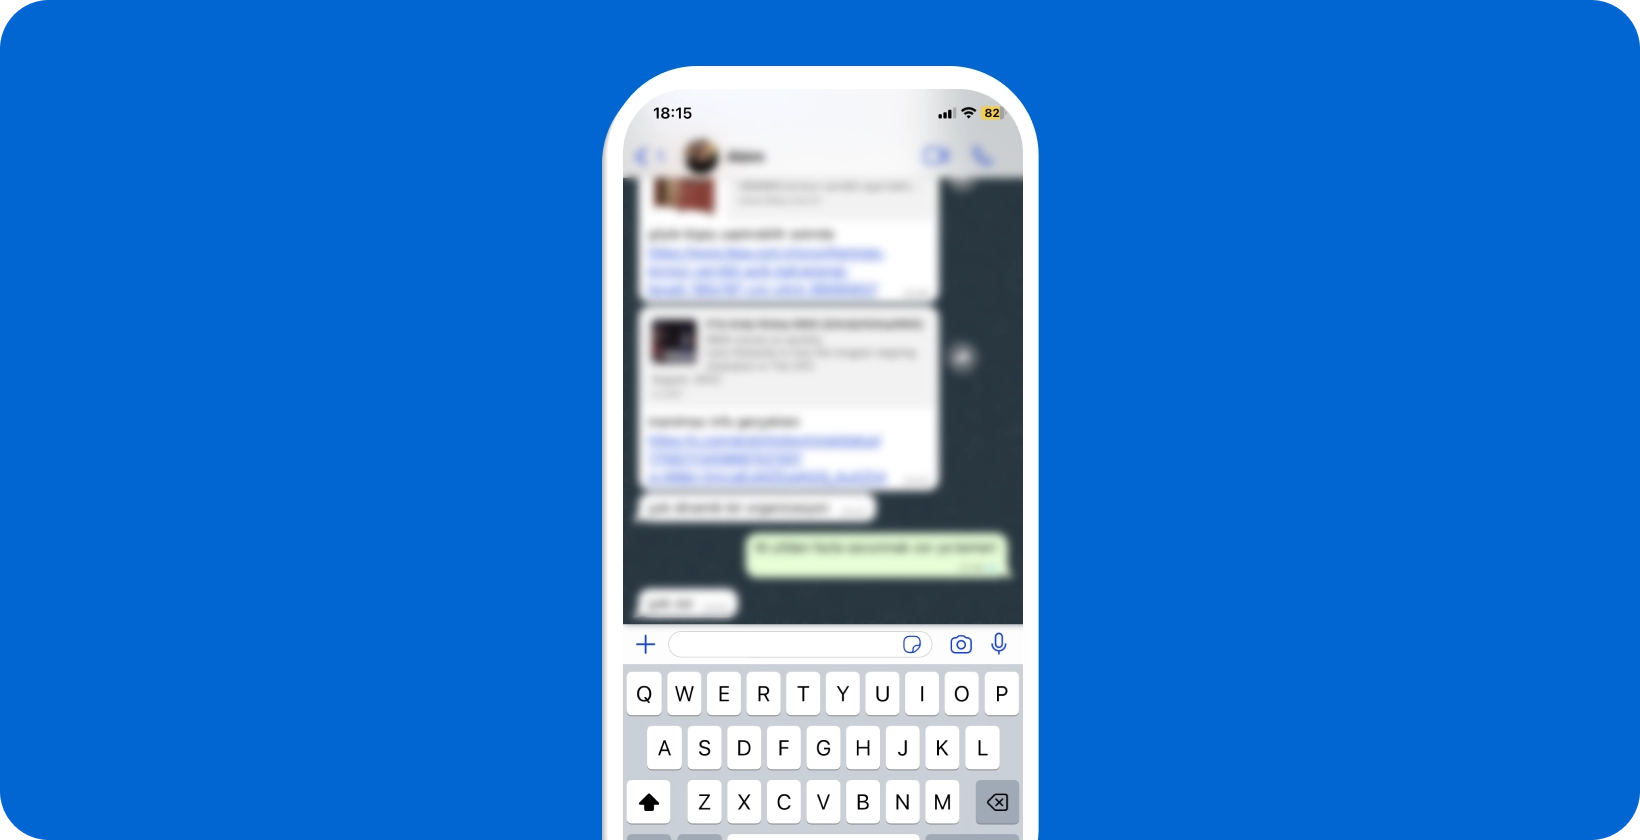 Viedtālrunis, kas parāda aktīvu WhatsApp sarunu ar atvērtu tastatūru, gatavs balss diktātam.